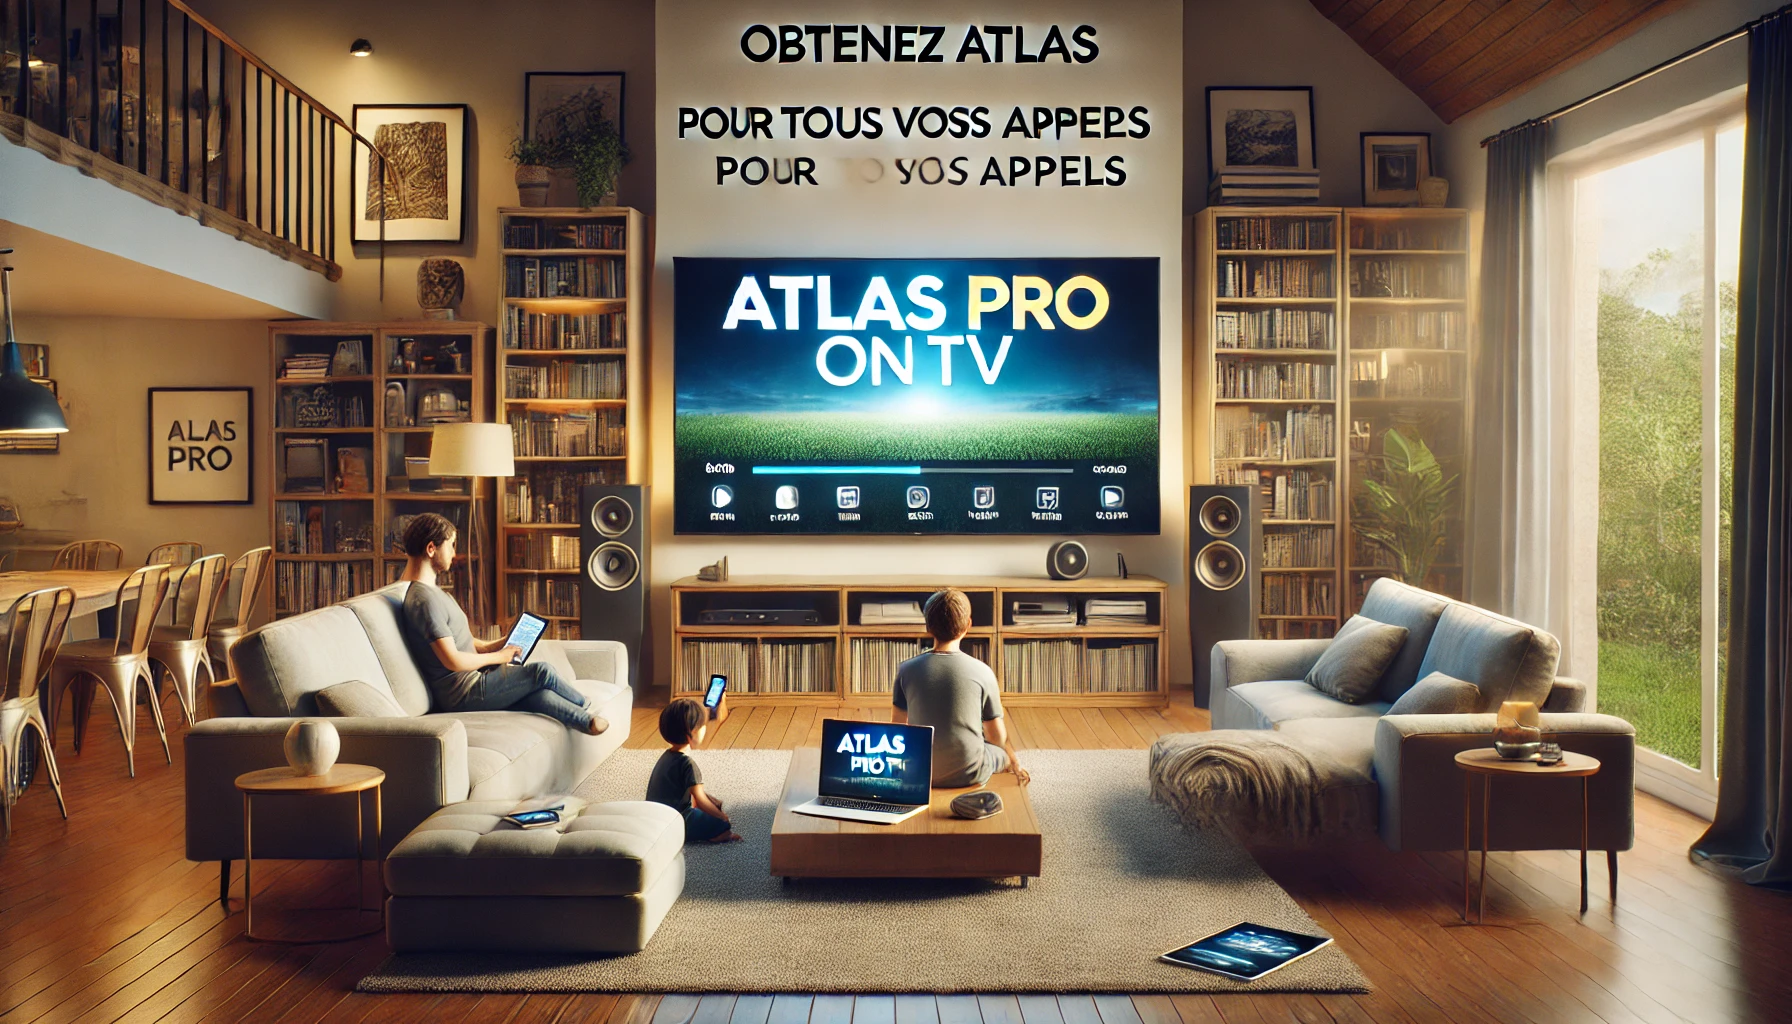 Obtenez Atlas pro ontv pour tous vos appareils